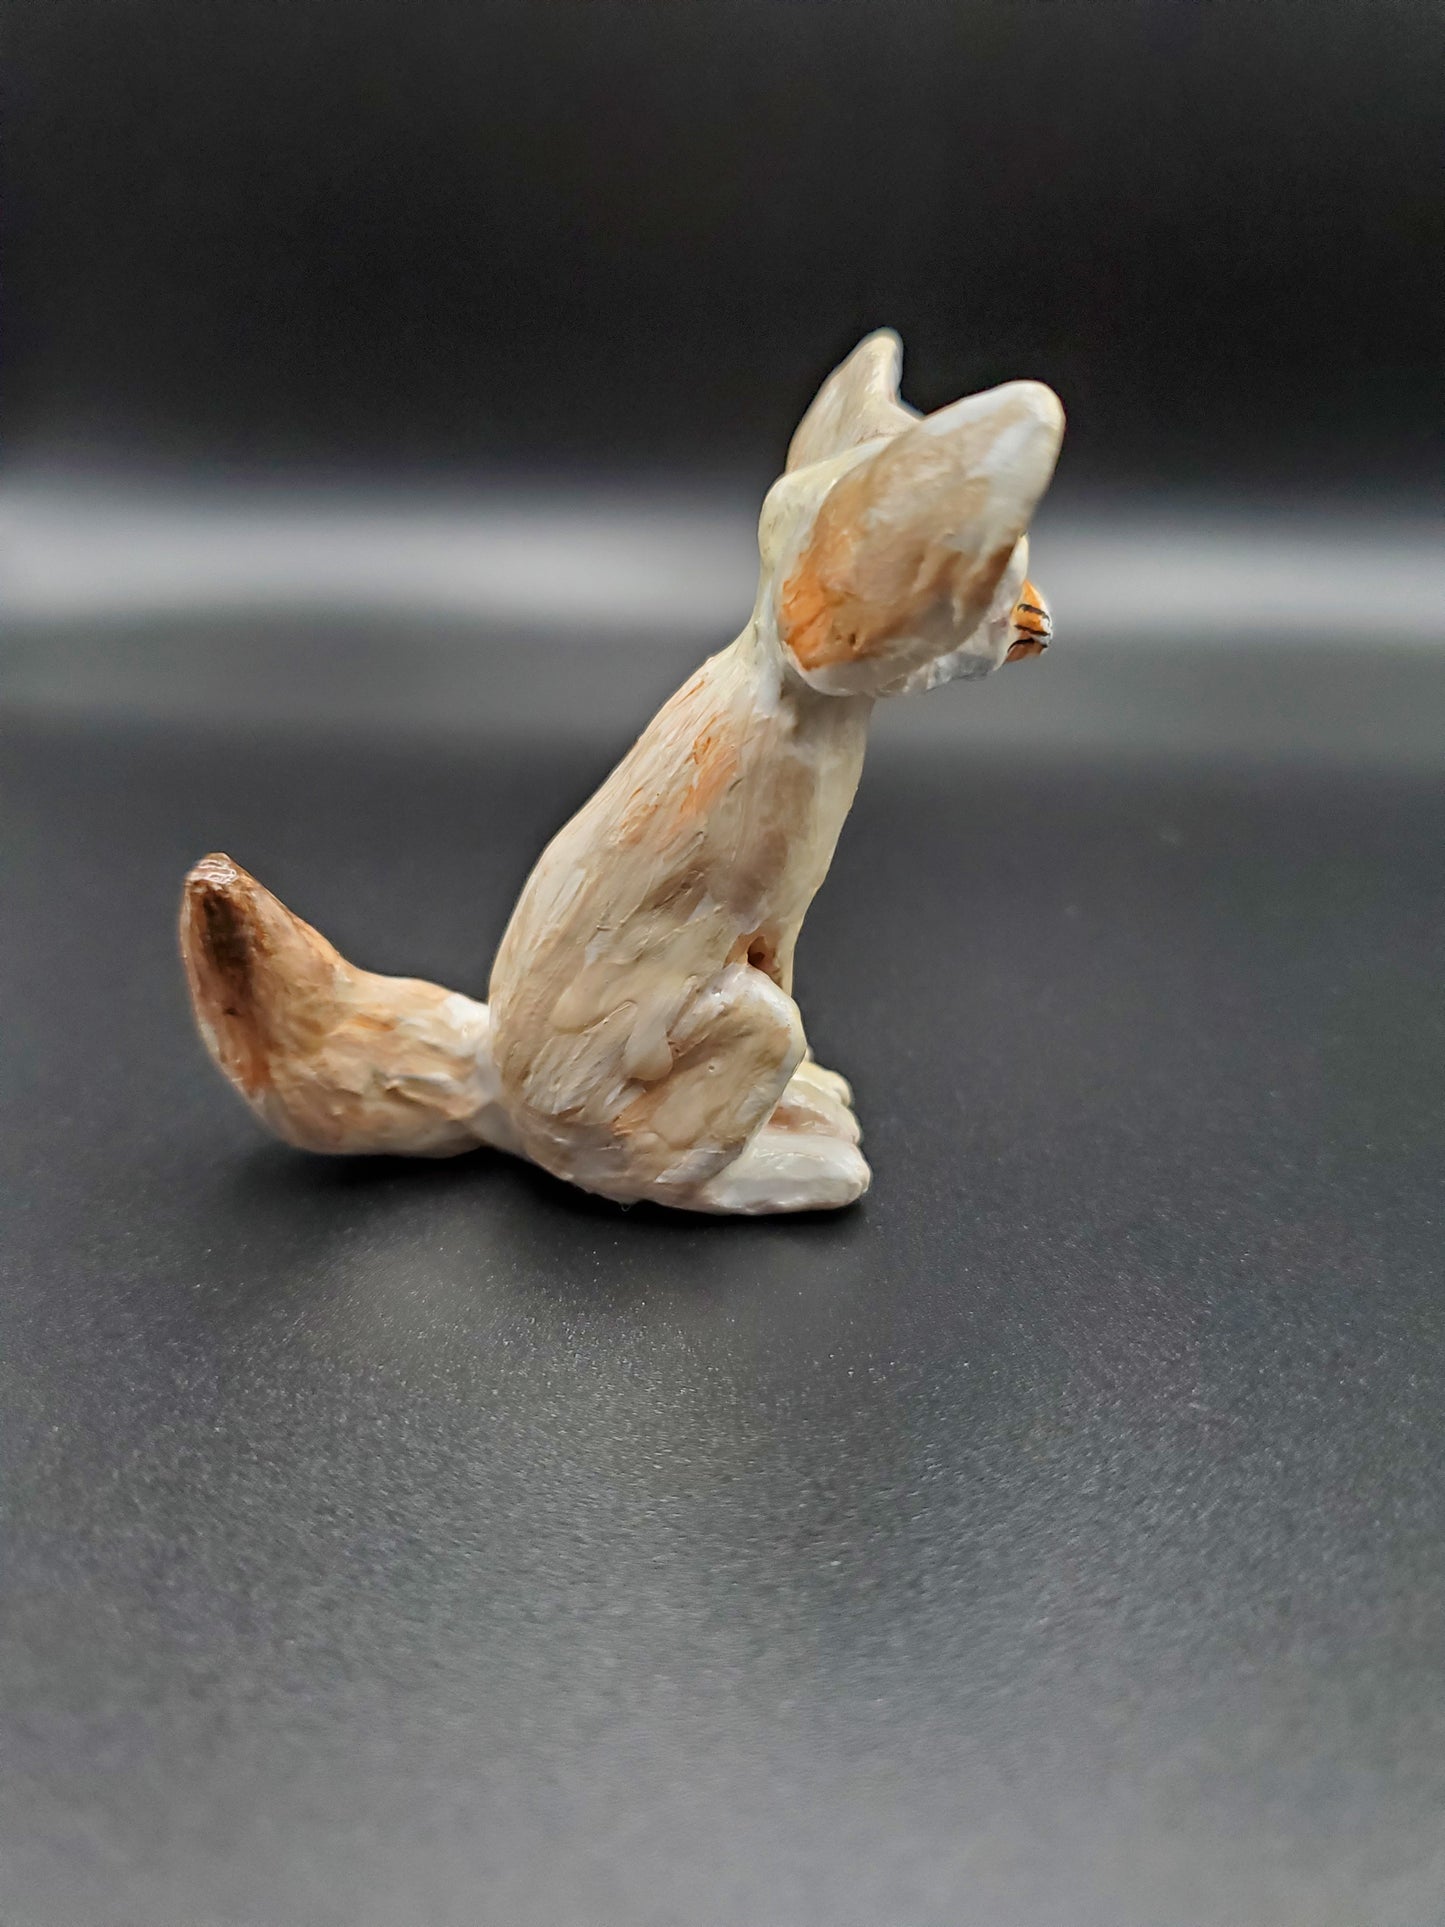 Fennec Fox Figurine